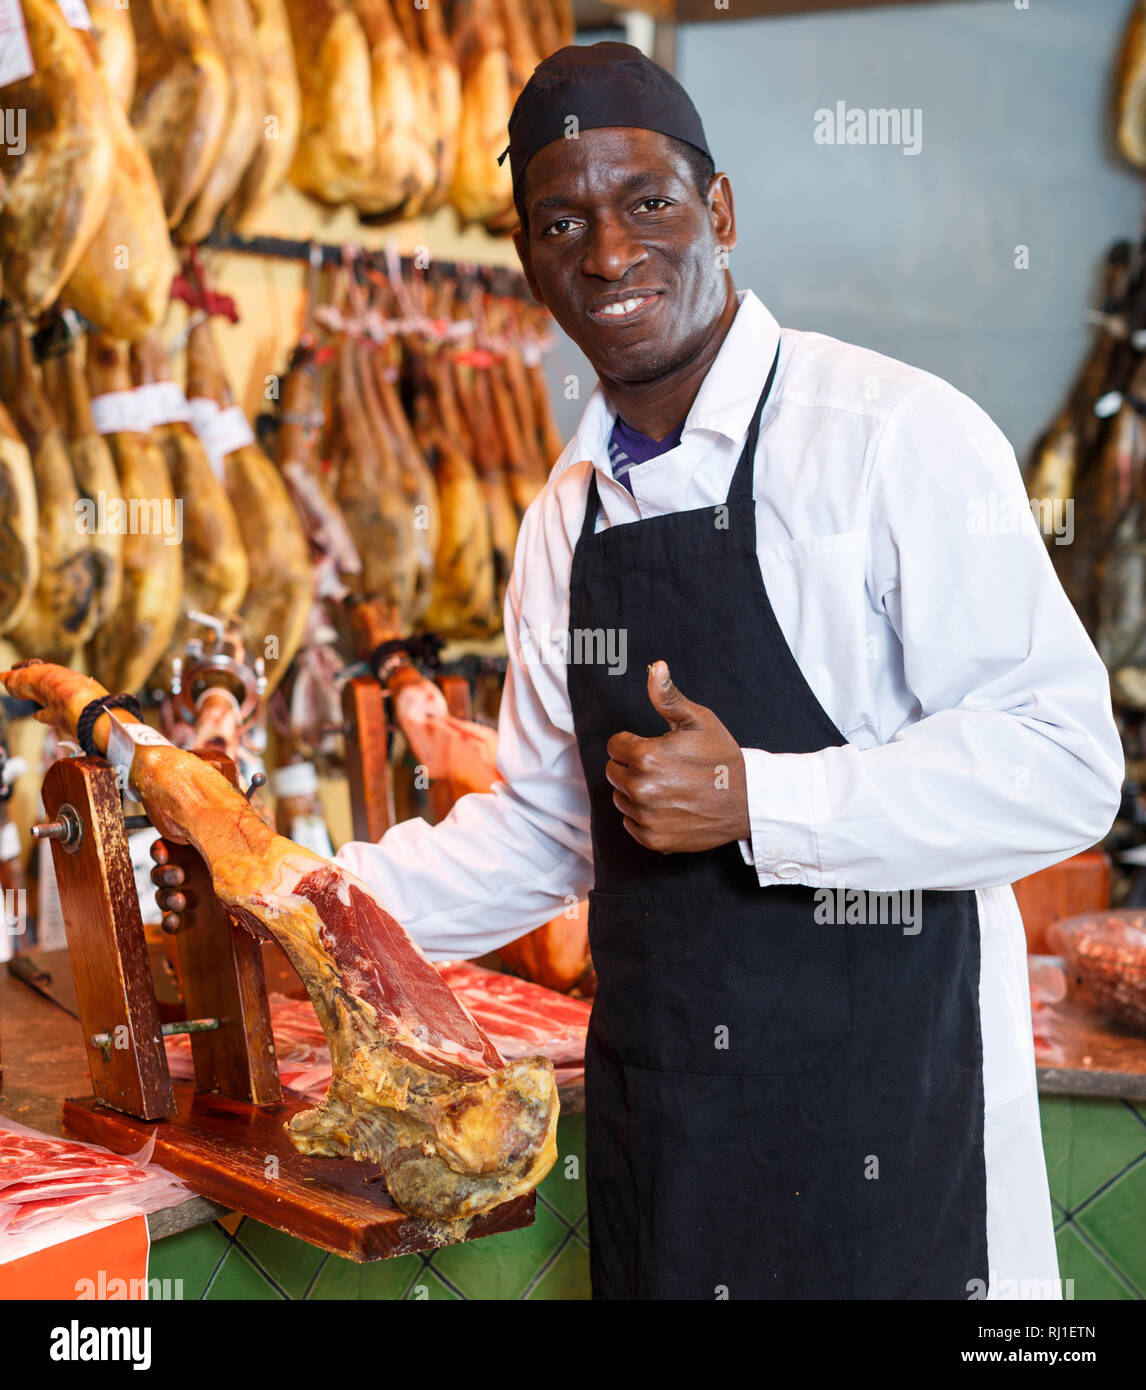 Fröhlich Afrikanische amerikanische Verkäufer zeigen, Daumen hoch und bietet köstliche spanische Jamon in Metzgerei Stockfoto